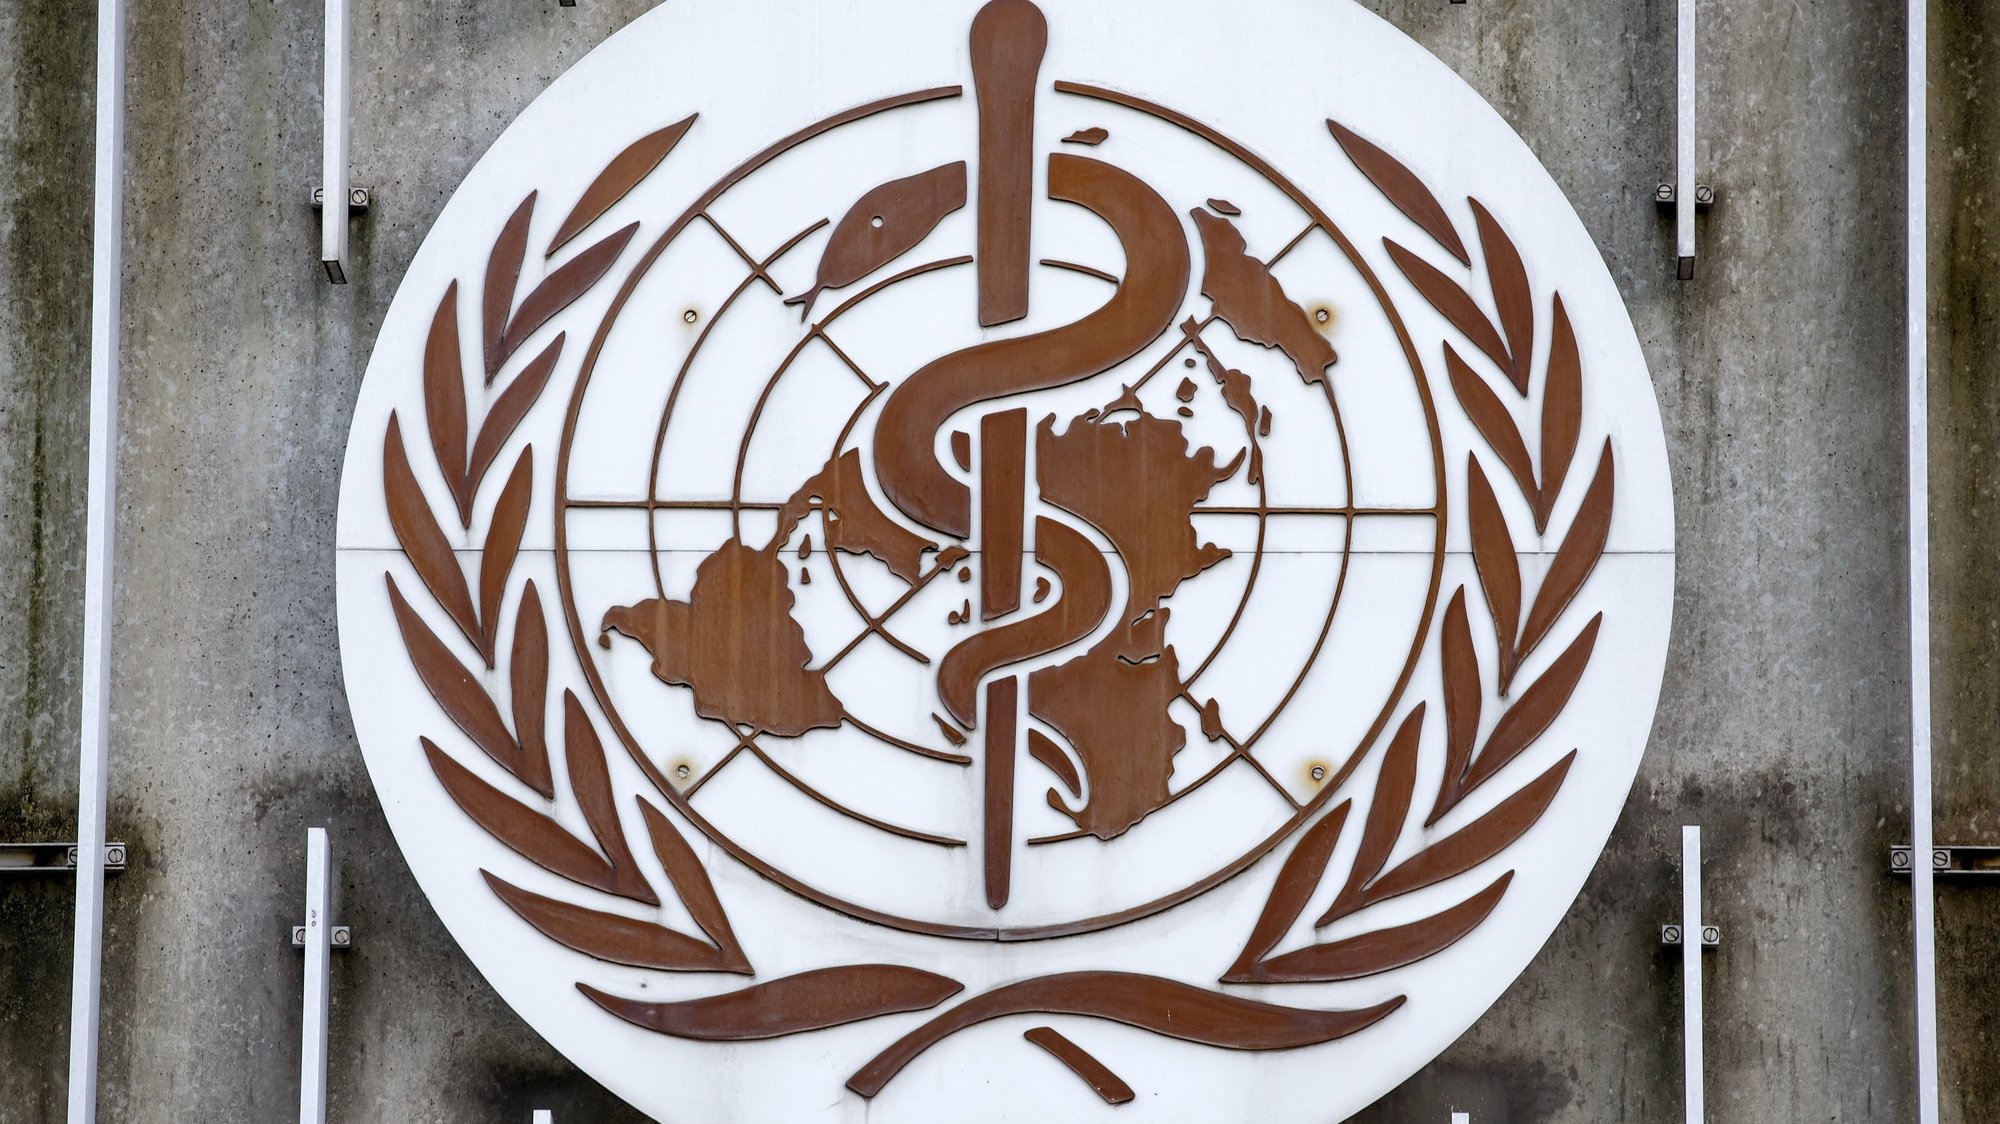 Logotipo da Organização Mundial de Saúde